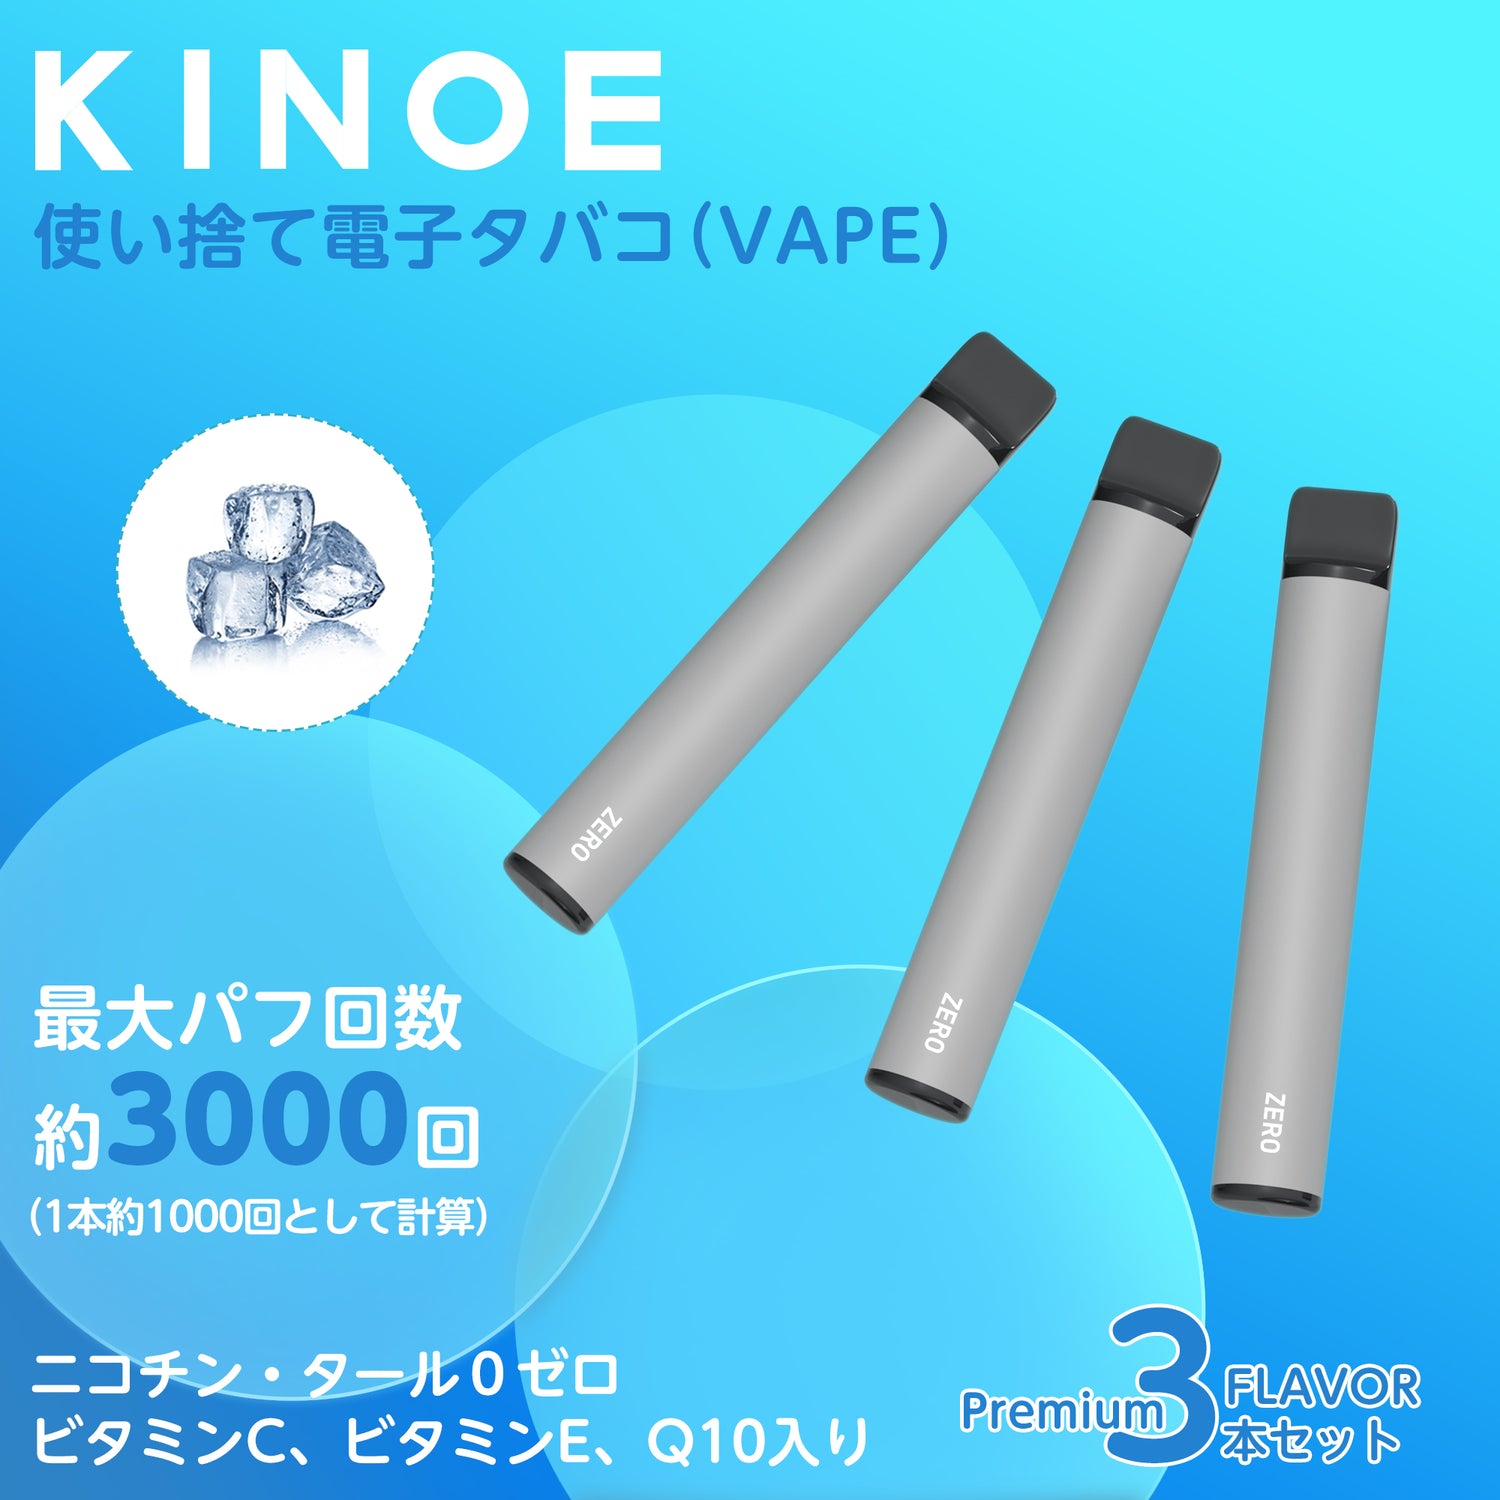 KINOE Disposable Electronic Cigarette Set of 3 (Super Cool Feeling)